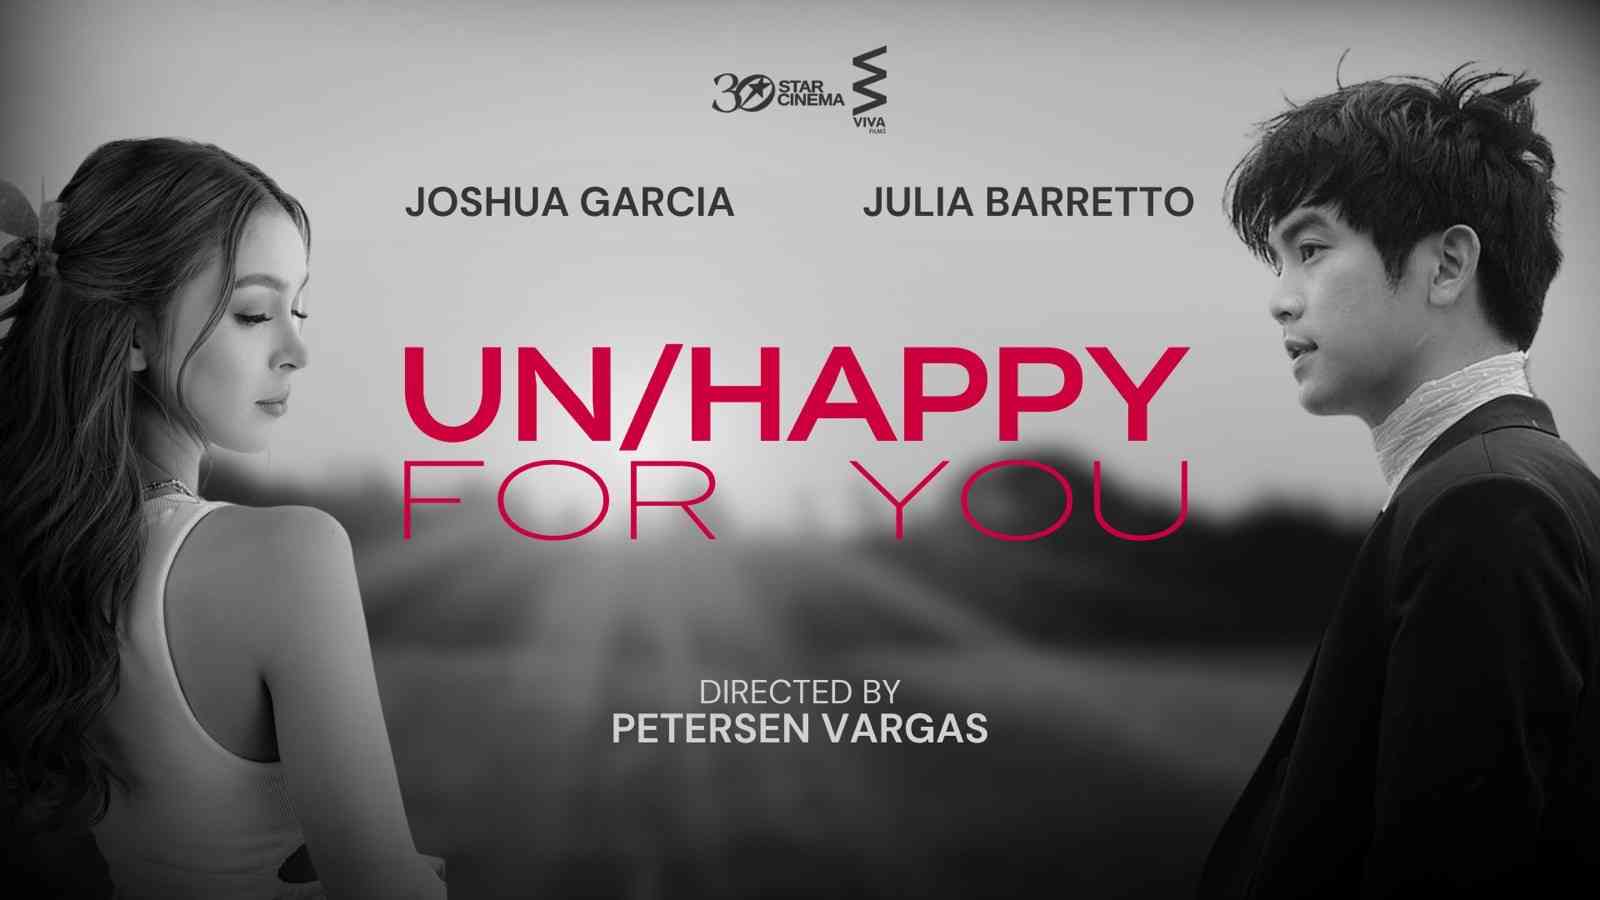 Joshua Garcia, Julia Barretto to reunite in new film 'Un/happy for You'